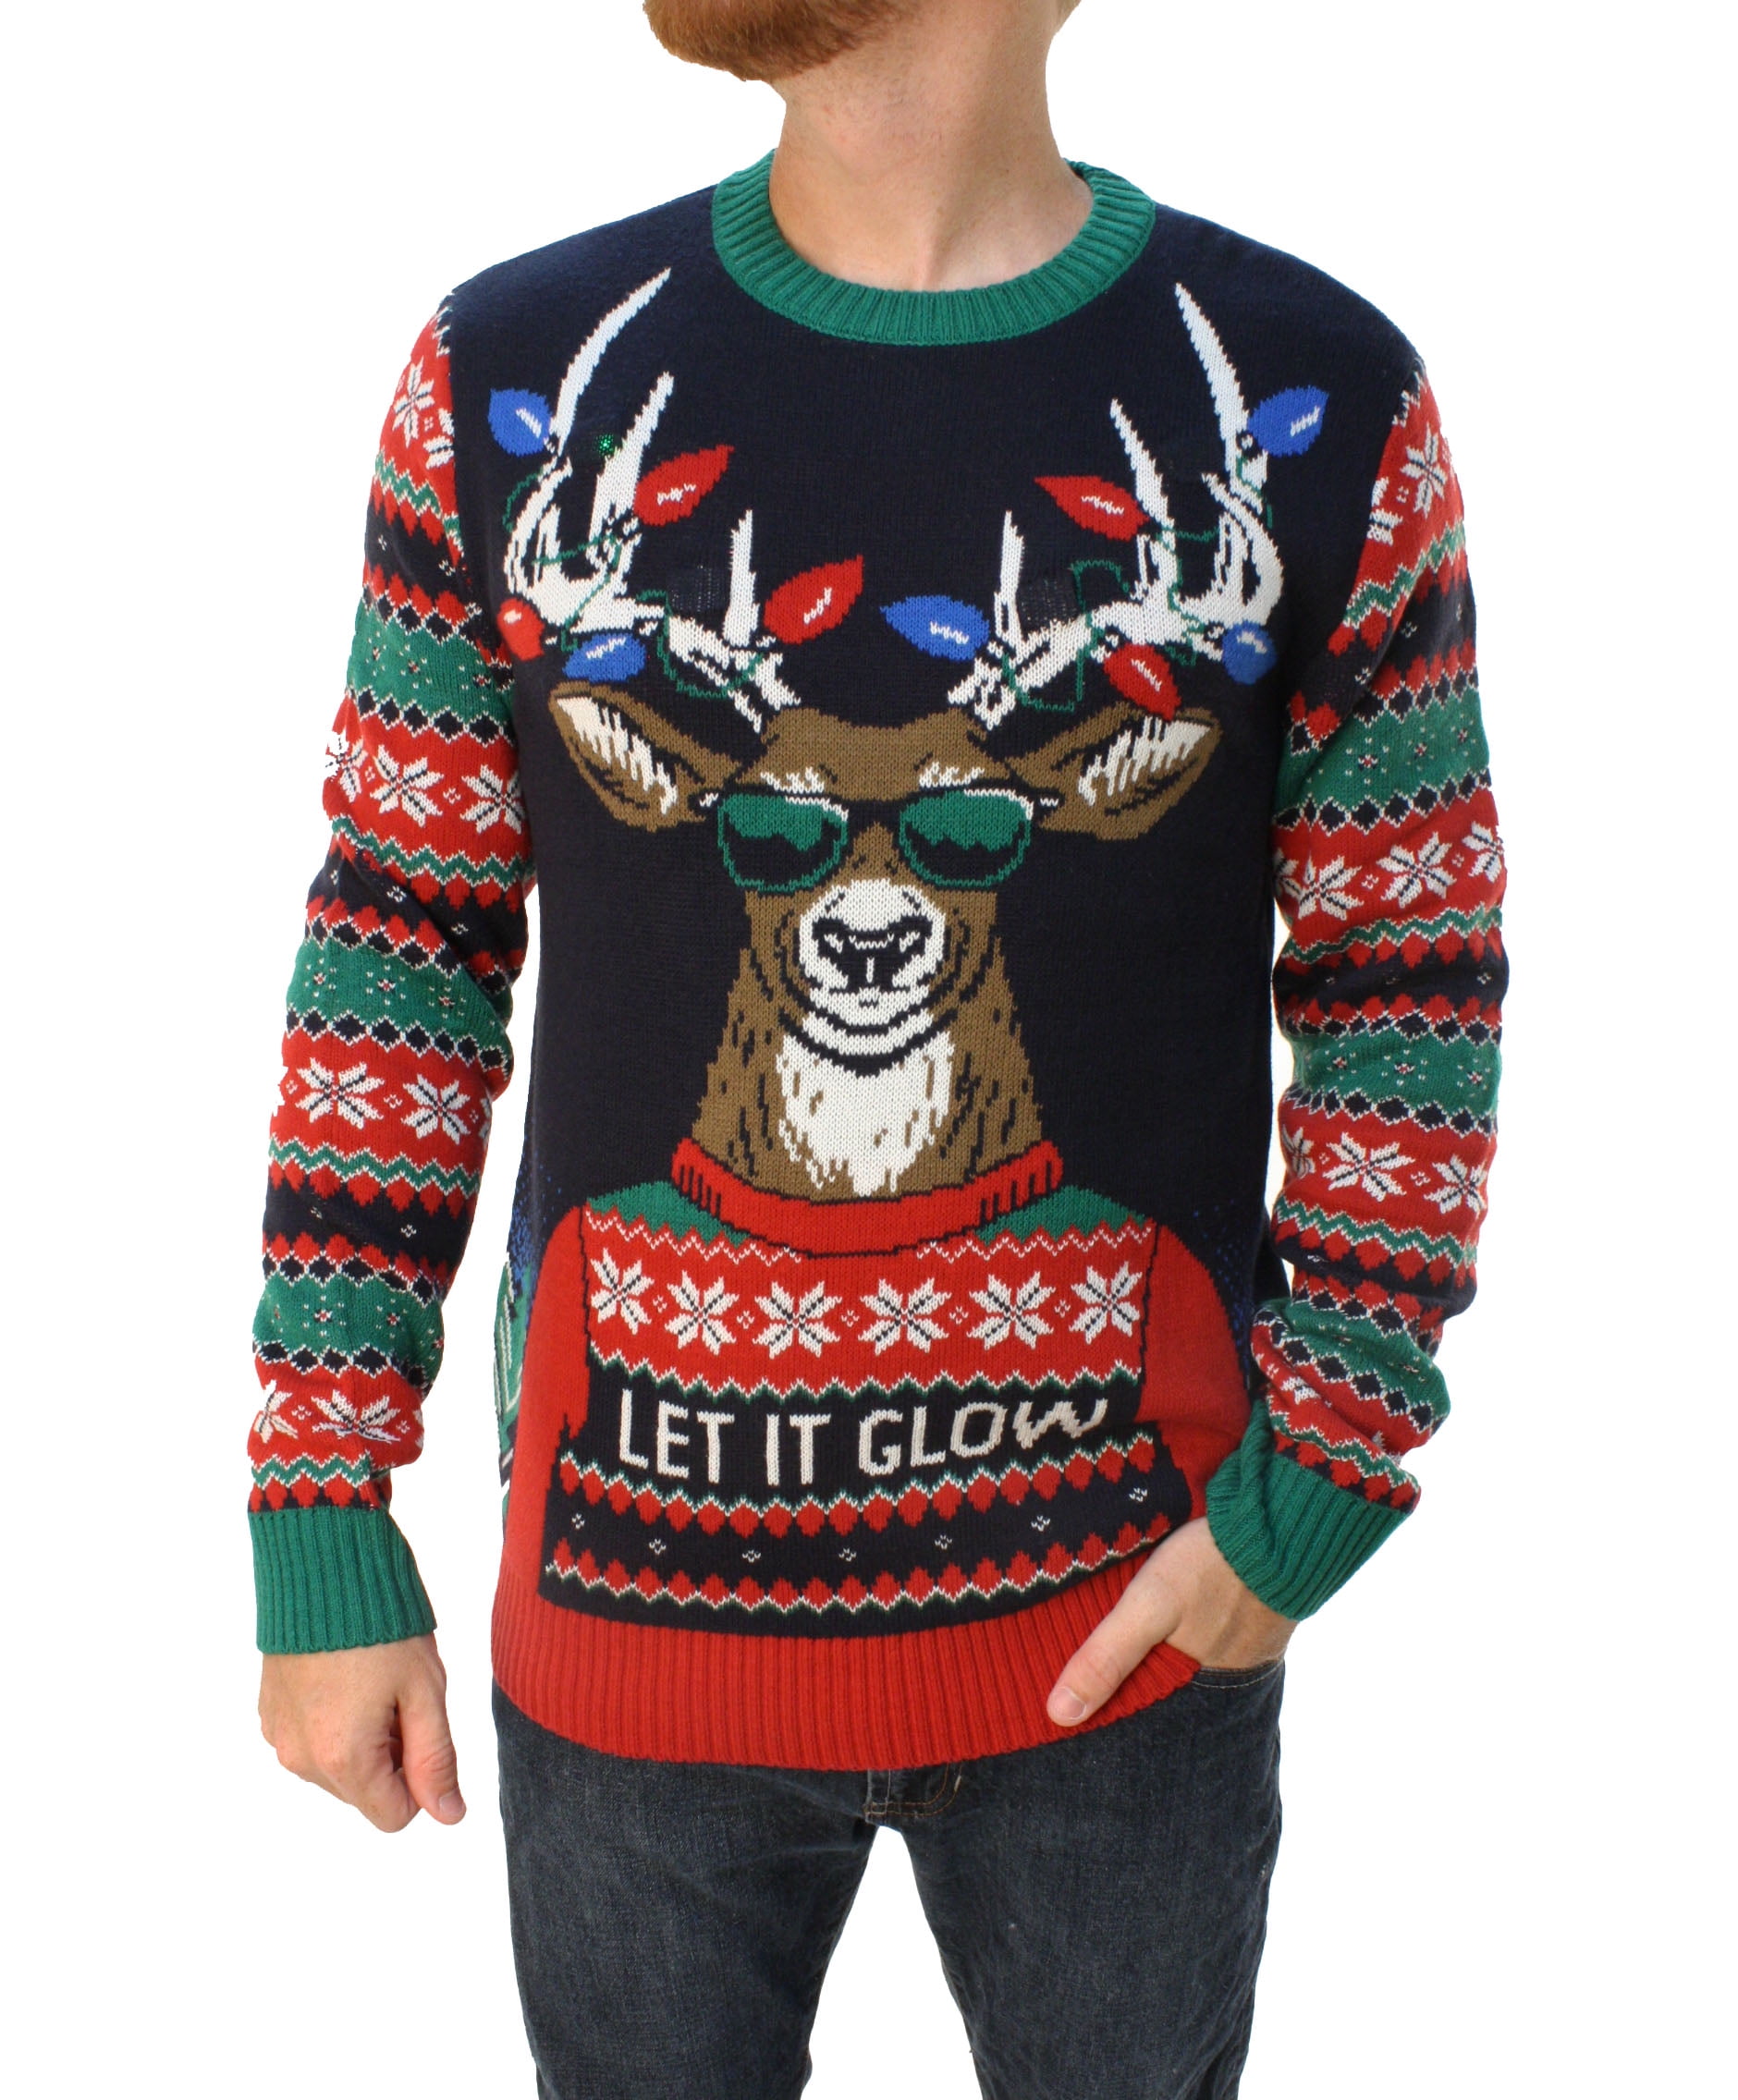 Ugly Christmas Sweater Ugly Christmas Sweater Men S Let It Glow